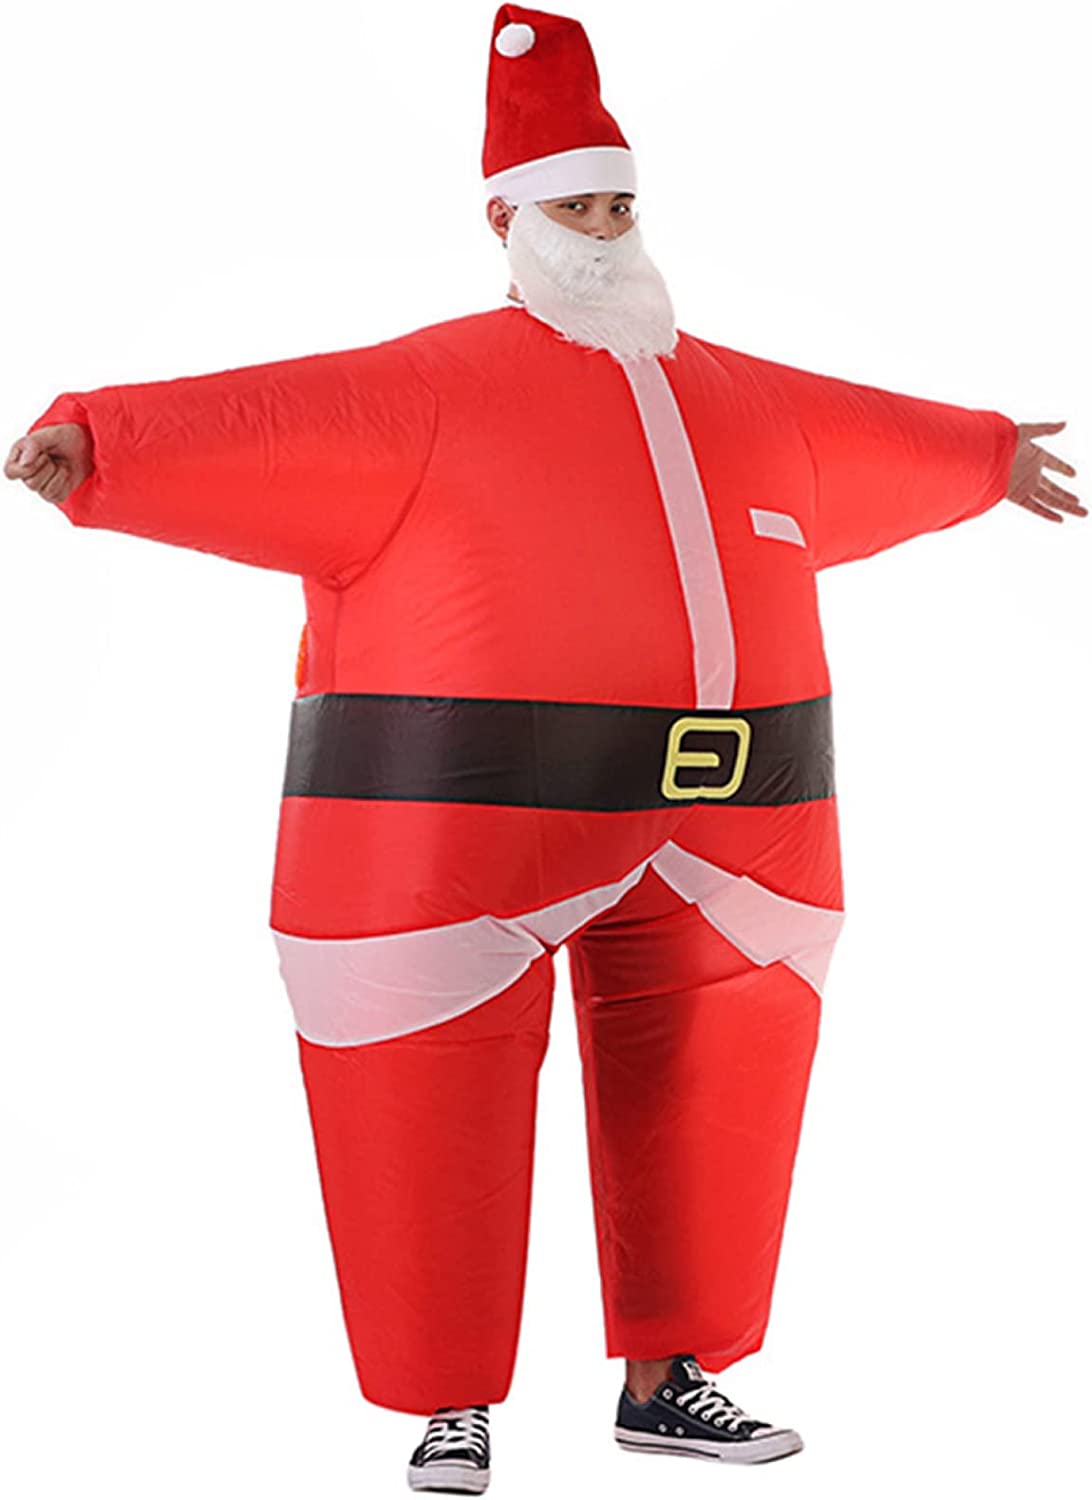 クリスマス コスプレ サンタクロース 仮装 コスチューム キャラクター 着ぐるみ 大人 成人用 ブロワー付き